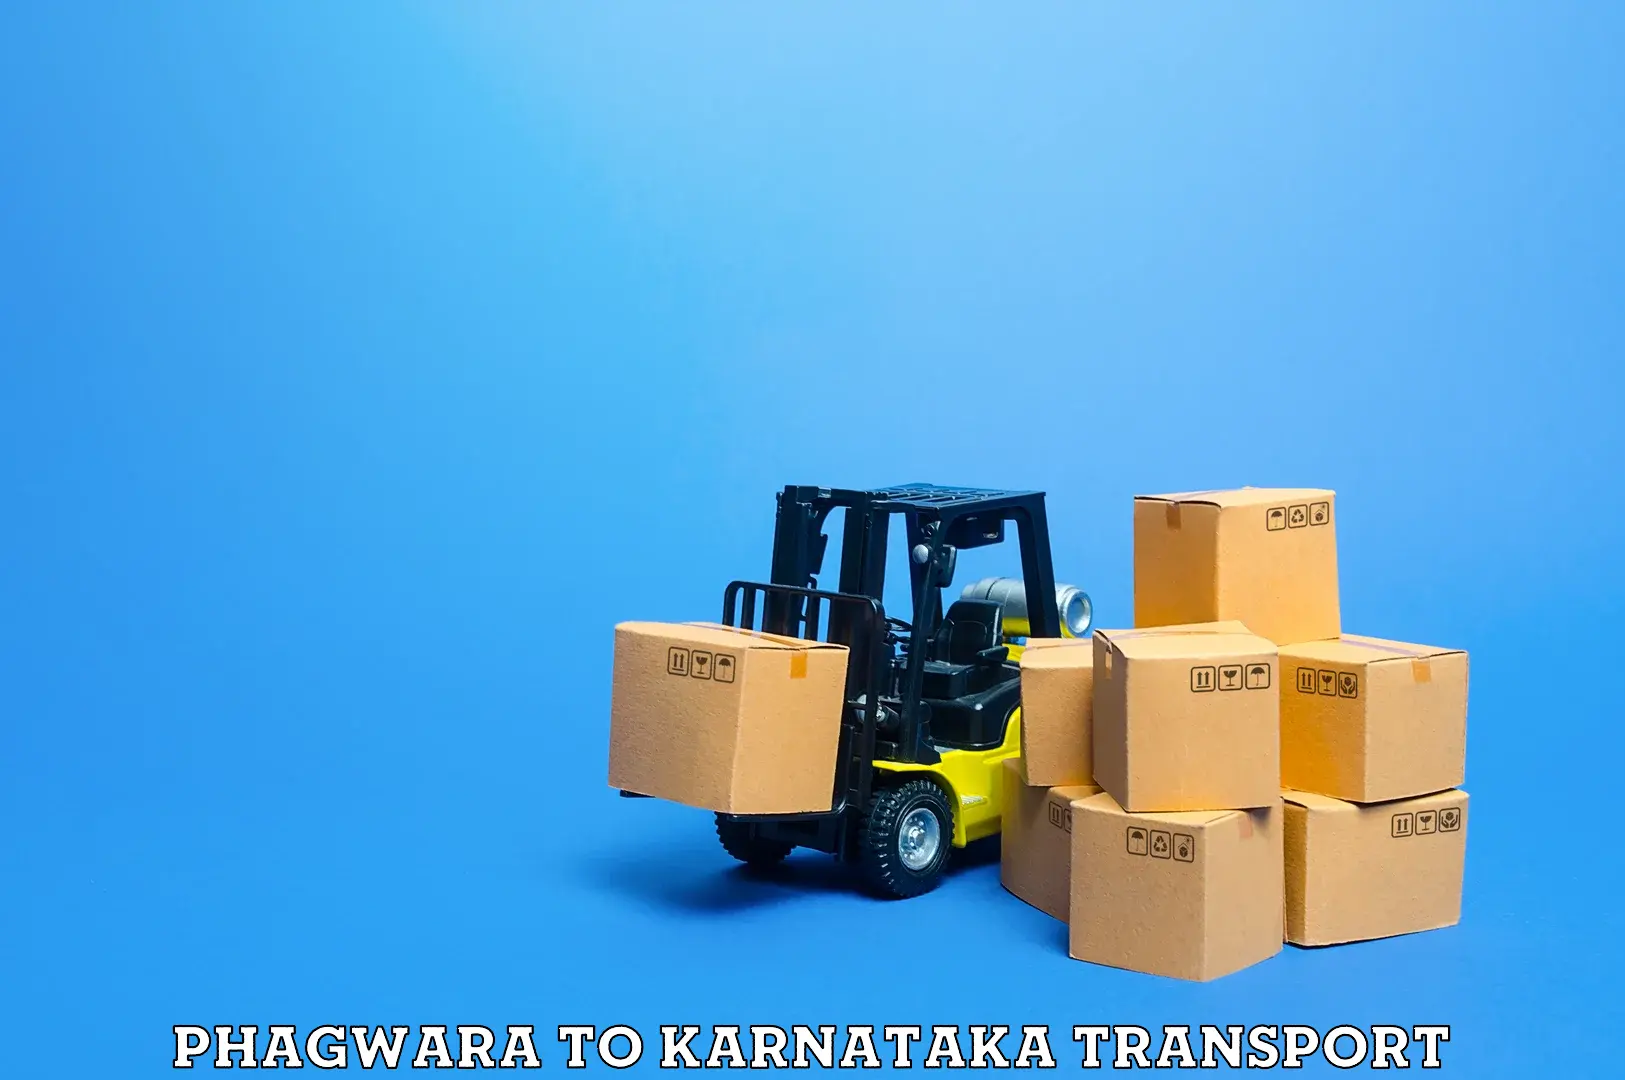 Delivery service Phagwara to Maramanahalli